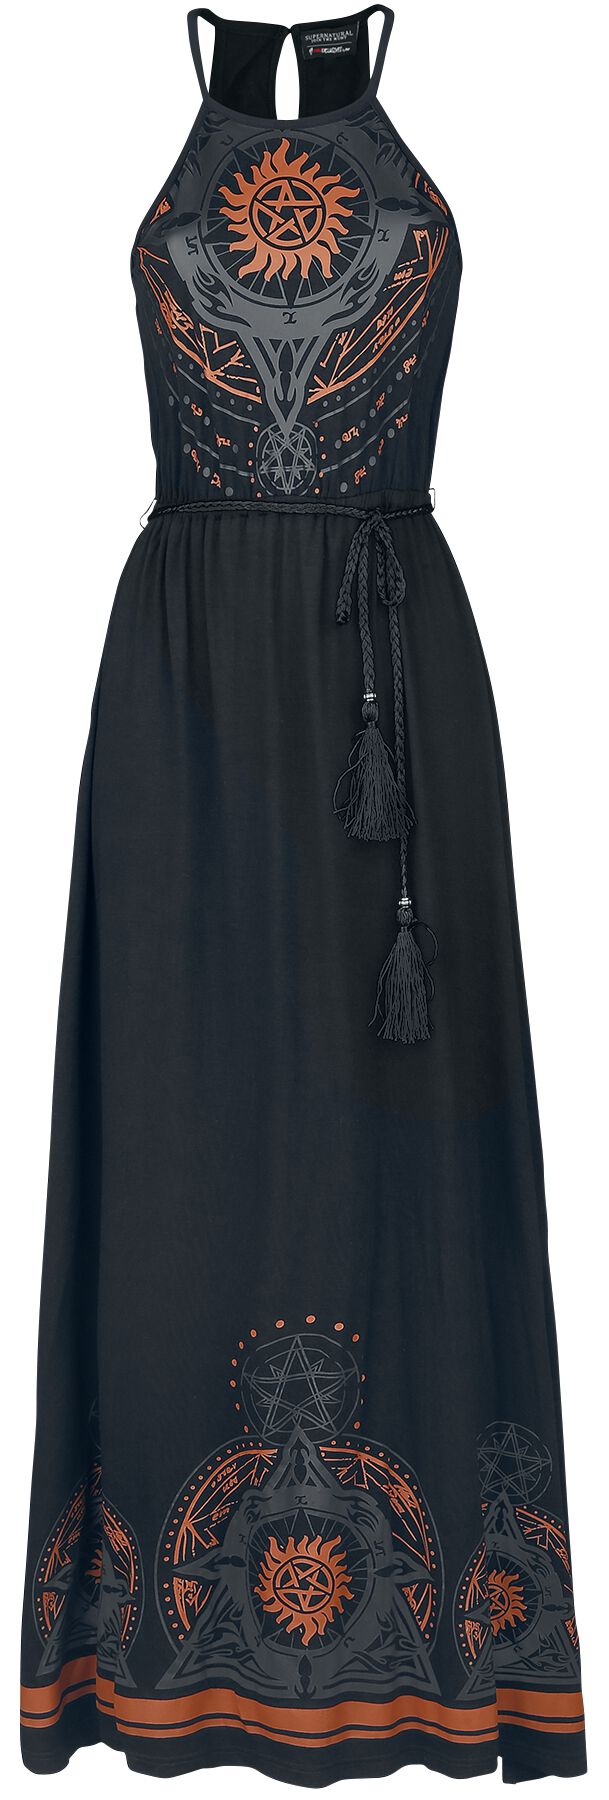 Supernatural Kleid lang - Mandala - S bis XXL - für Damen - Größe M - schwarz  - EMP exklusives Merchandise!